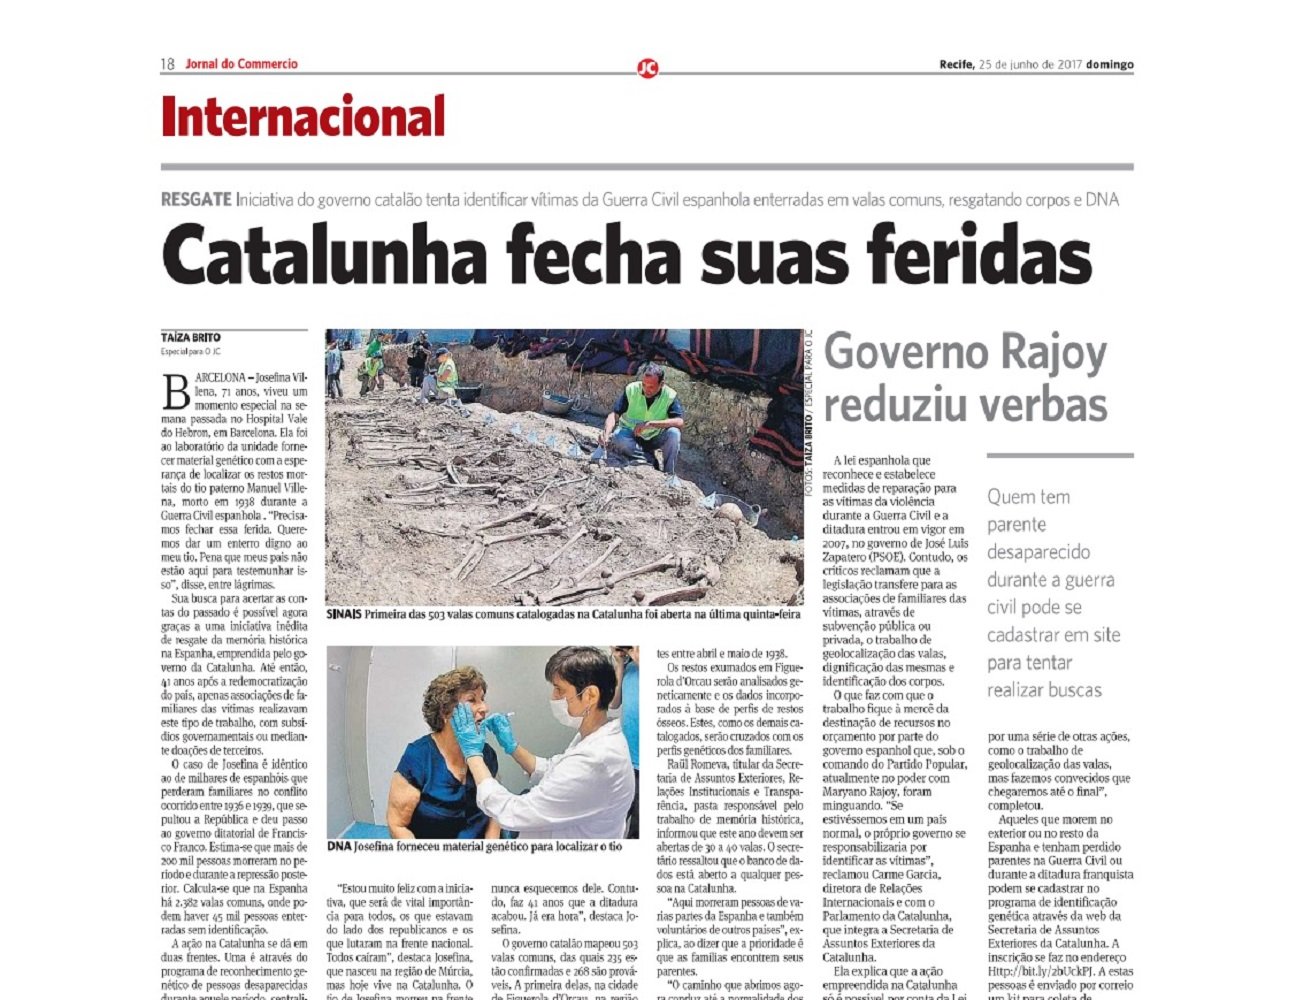 L’obertura de fosses de la Guerra Civil a Catalunya, a la premsa internacional